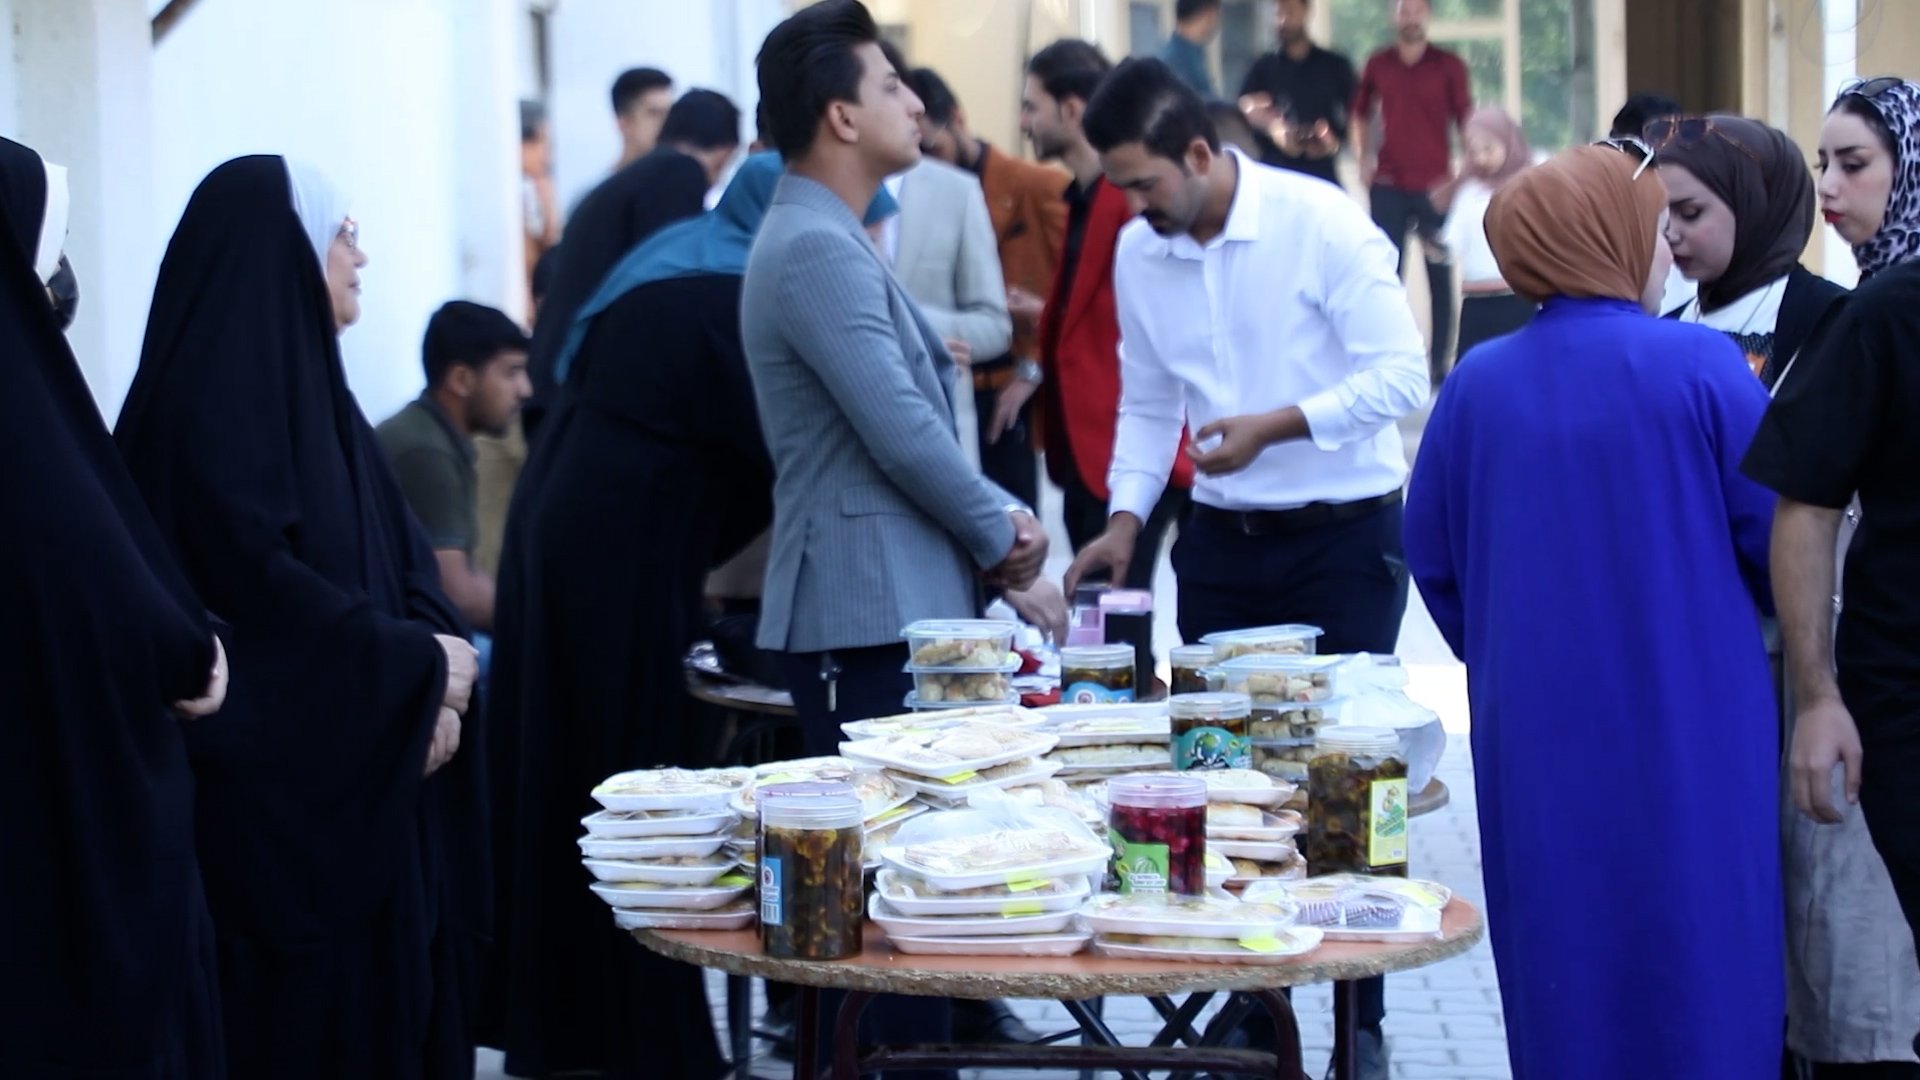 فيديو: أولاد وفتيات يعرضون منتجاتهم في بازار الإمام الكاظم بالديوانية